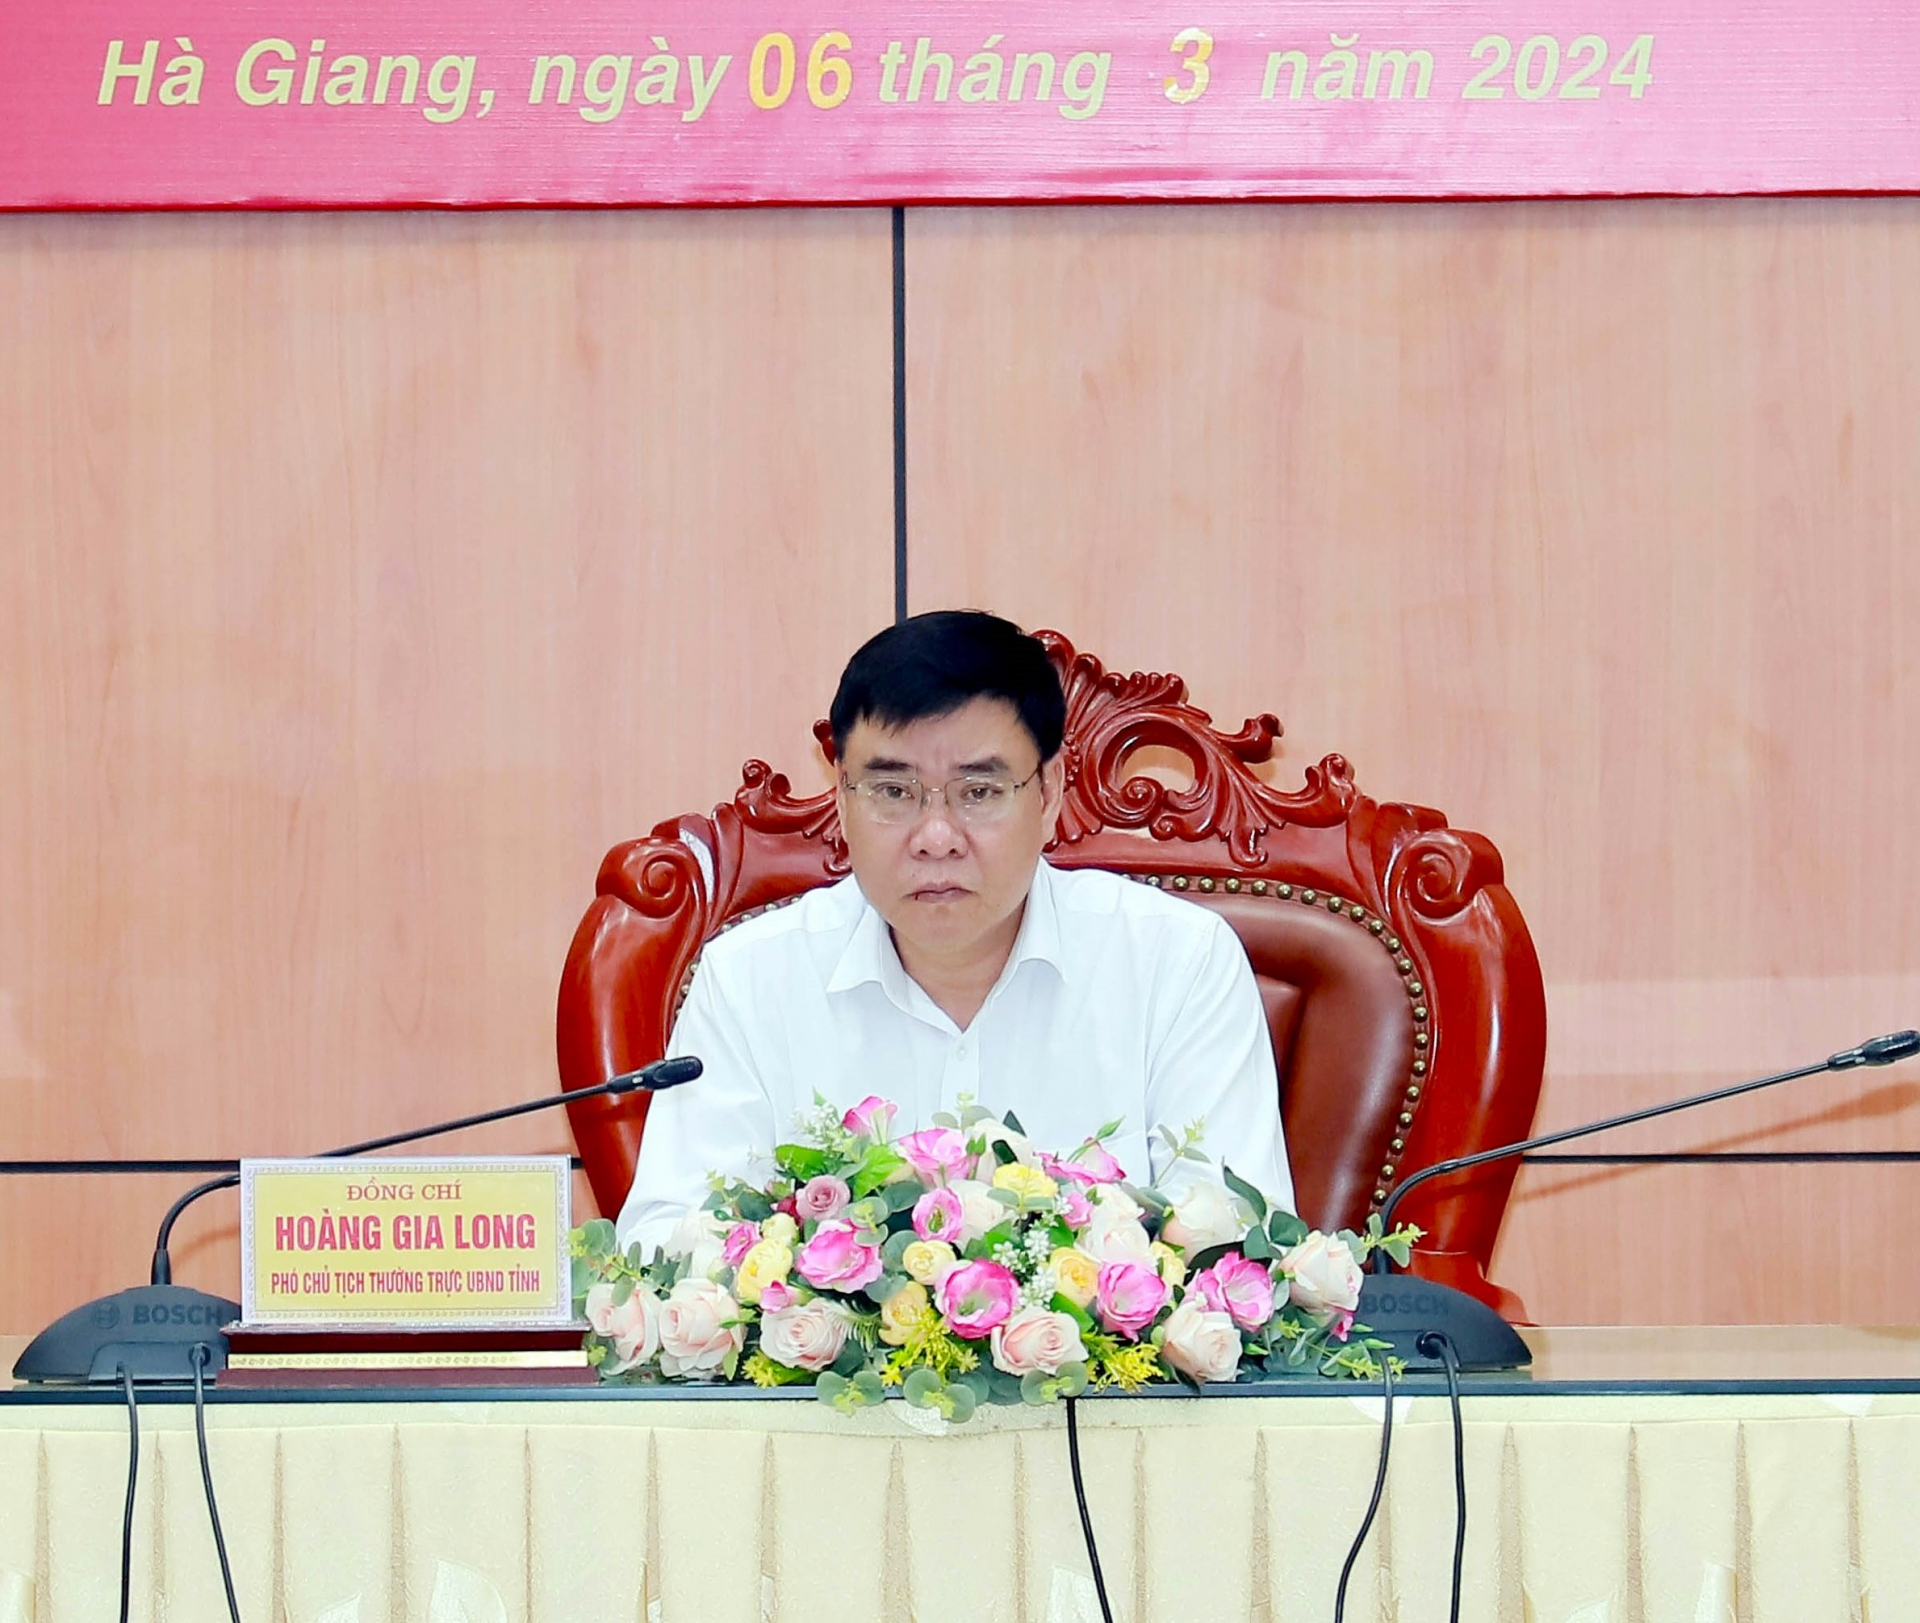 Phó Chủ tịch Thường trực UBND tỉnh Hoàng Gia Long chủ trì hội nghị tại điểm cầu của tỉnh.